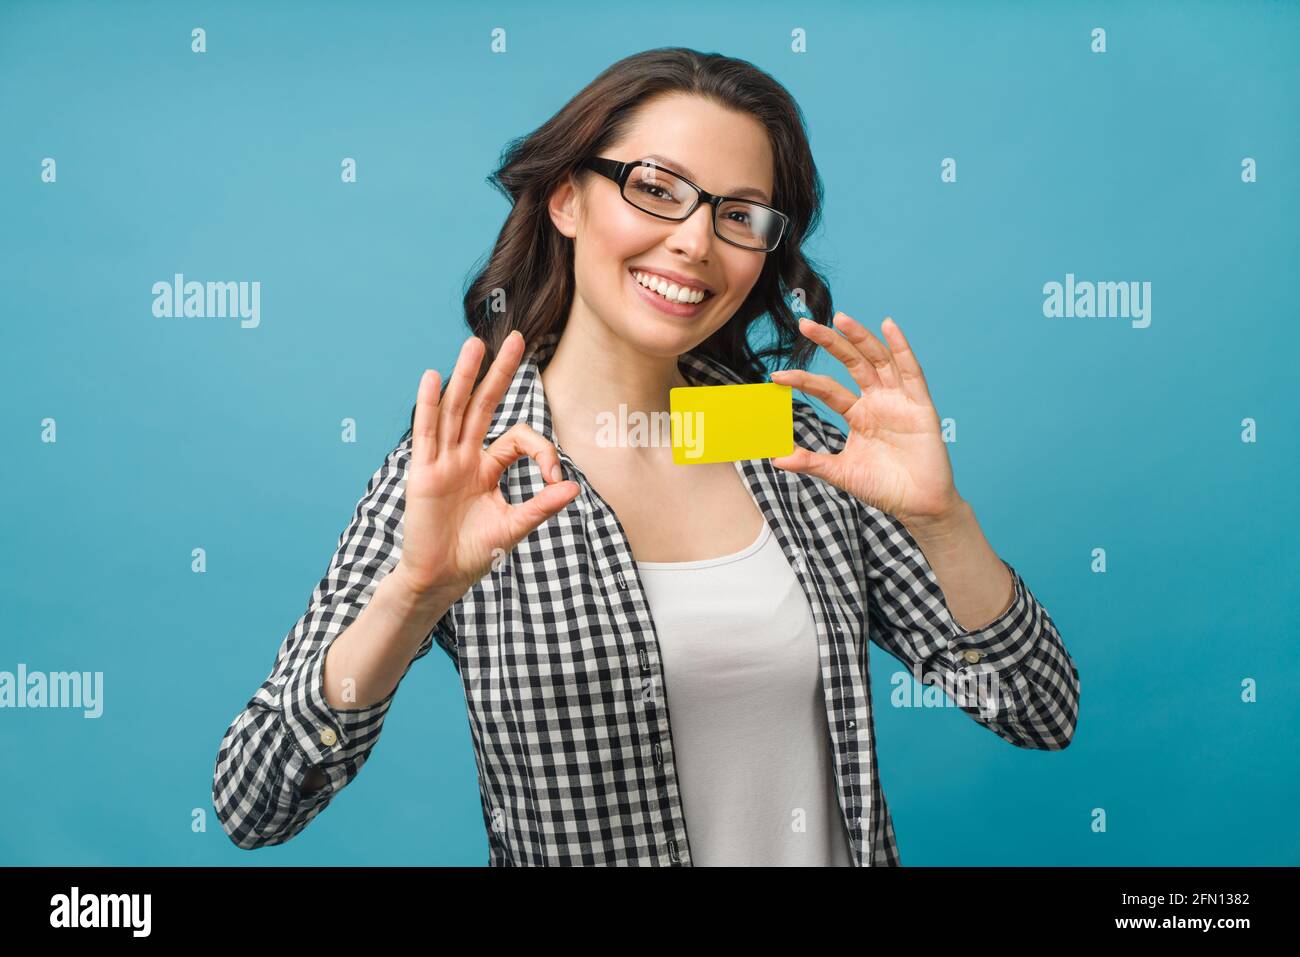 Jolie femme souriante dans une chemise habillée et des lunettes, montrant la carte de crédit à la main pour le concept de société financière et sans cashless, posant sur fond bleu Banque D'Images